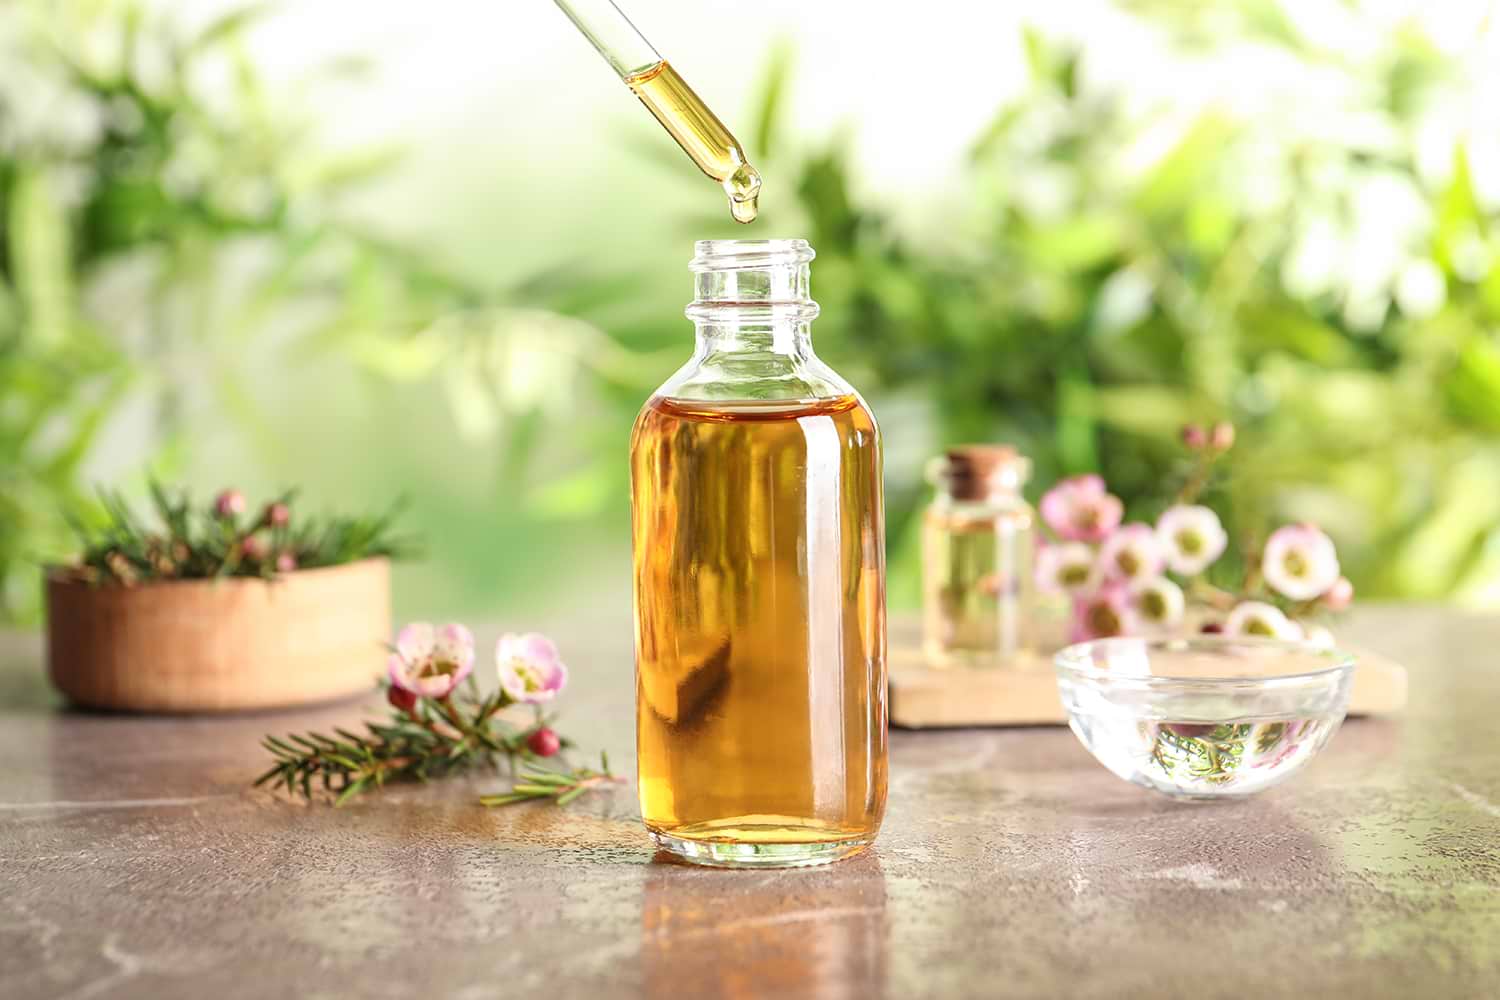 Best Tea Tree Oil for Acne: Secret Weapon Against Pesky Pimples